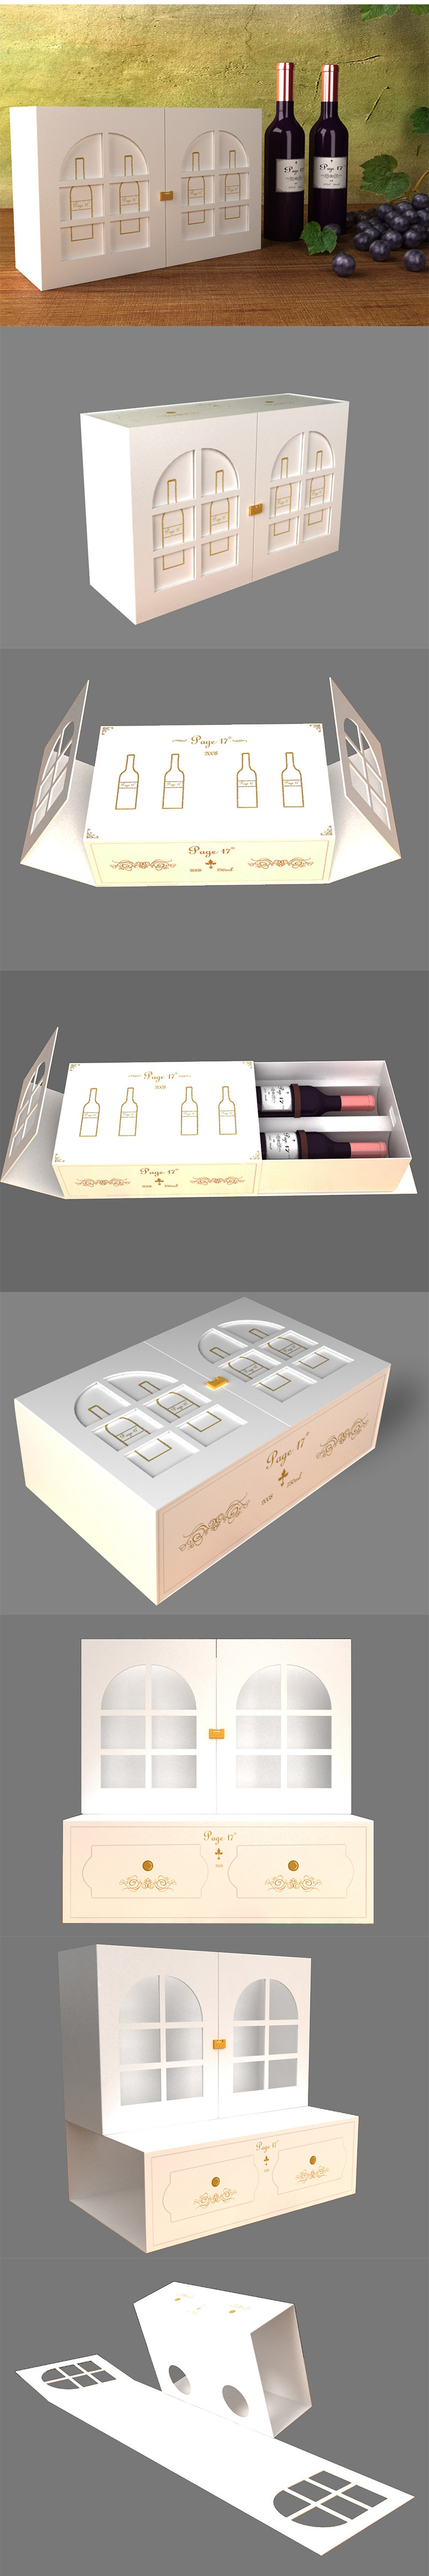 【葡萄酒盒】创意趣味互动高档红酒礼盒包装设计 异形盒 白卡纸盒